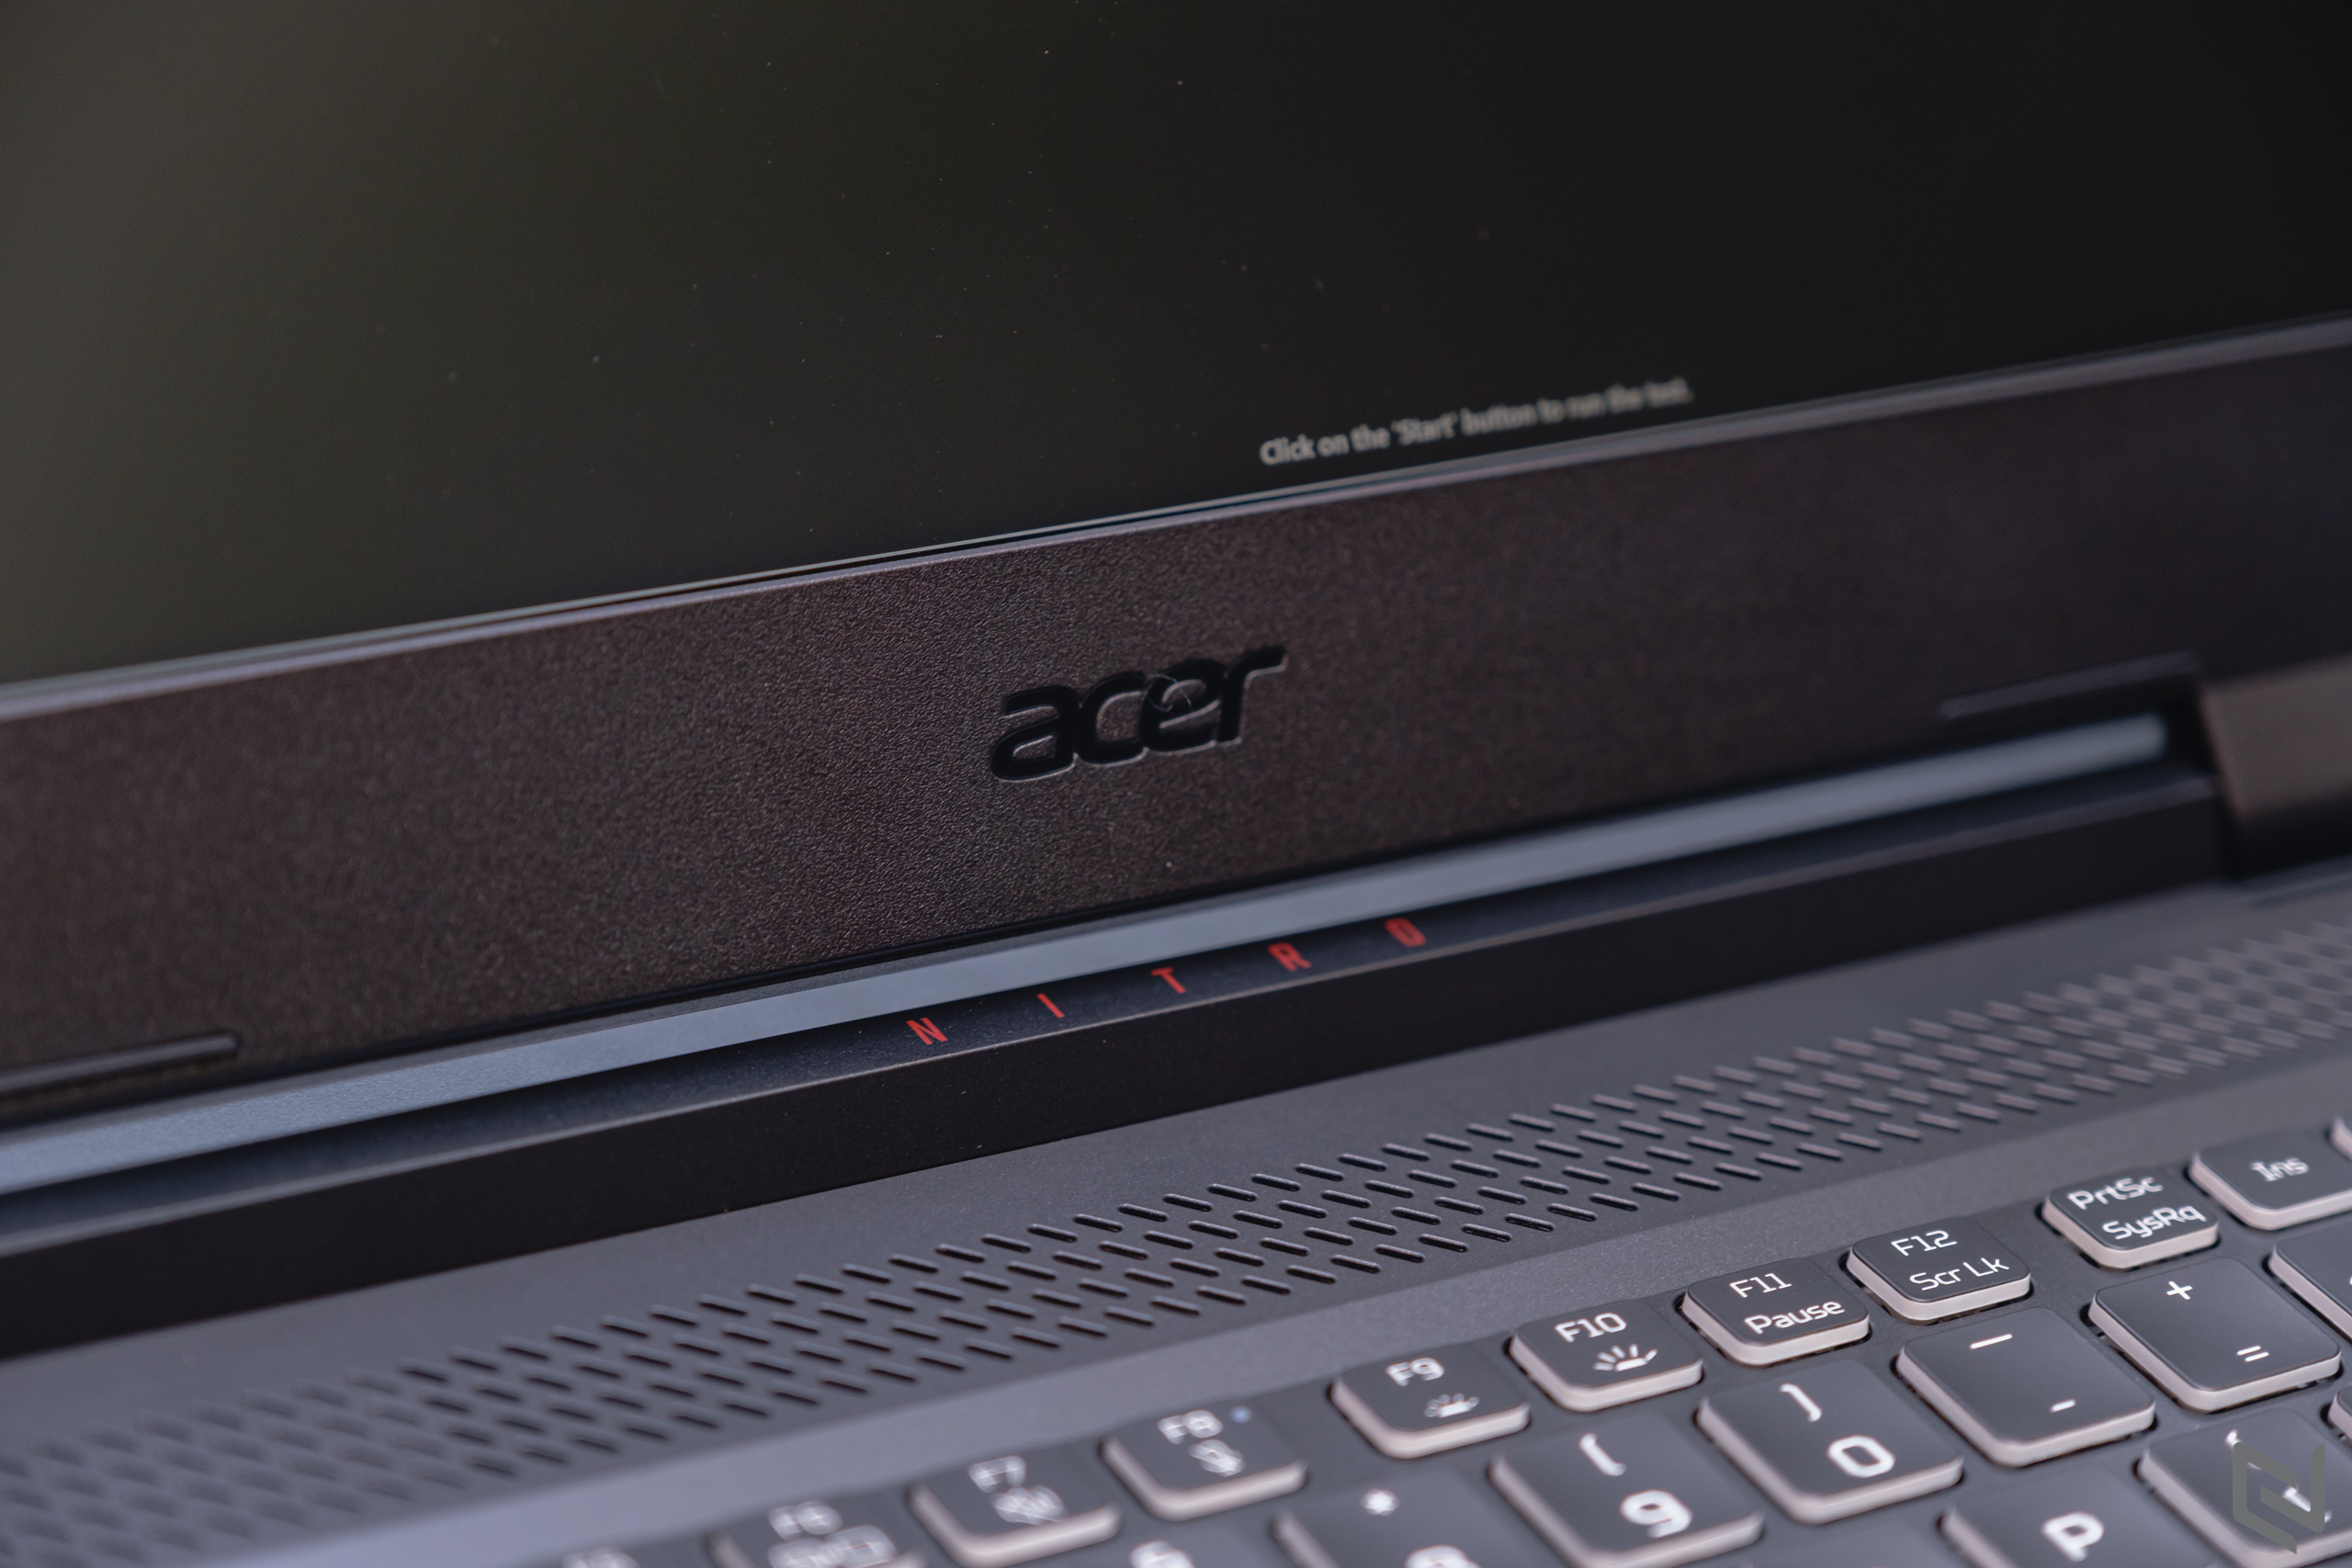 Acer Nitro 5 Tiger chính thức lên kệ, laptop gaming quốc dân giá từ 27.99 triệu